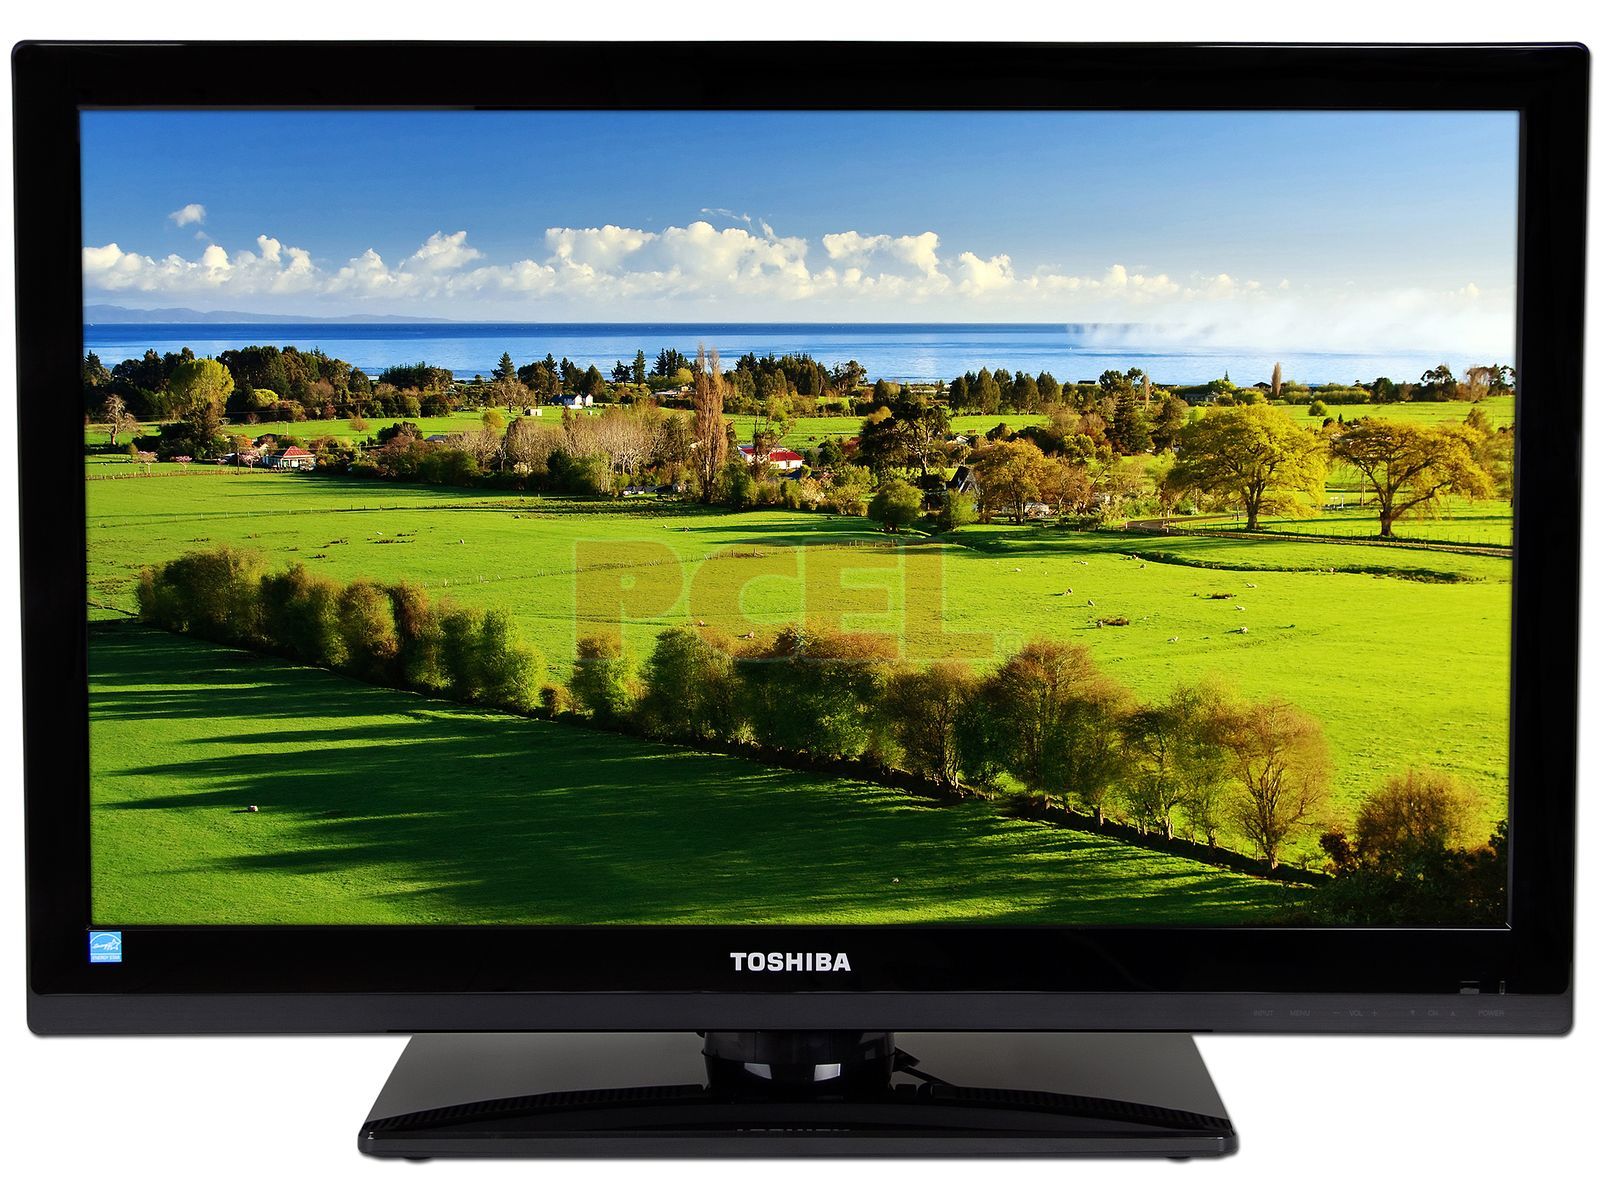 Electro 10 - Tv Toshiba • Modelo 32L4700LA • Pantalla LED